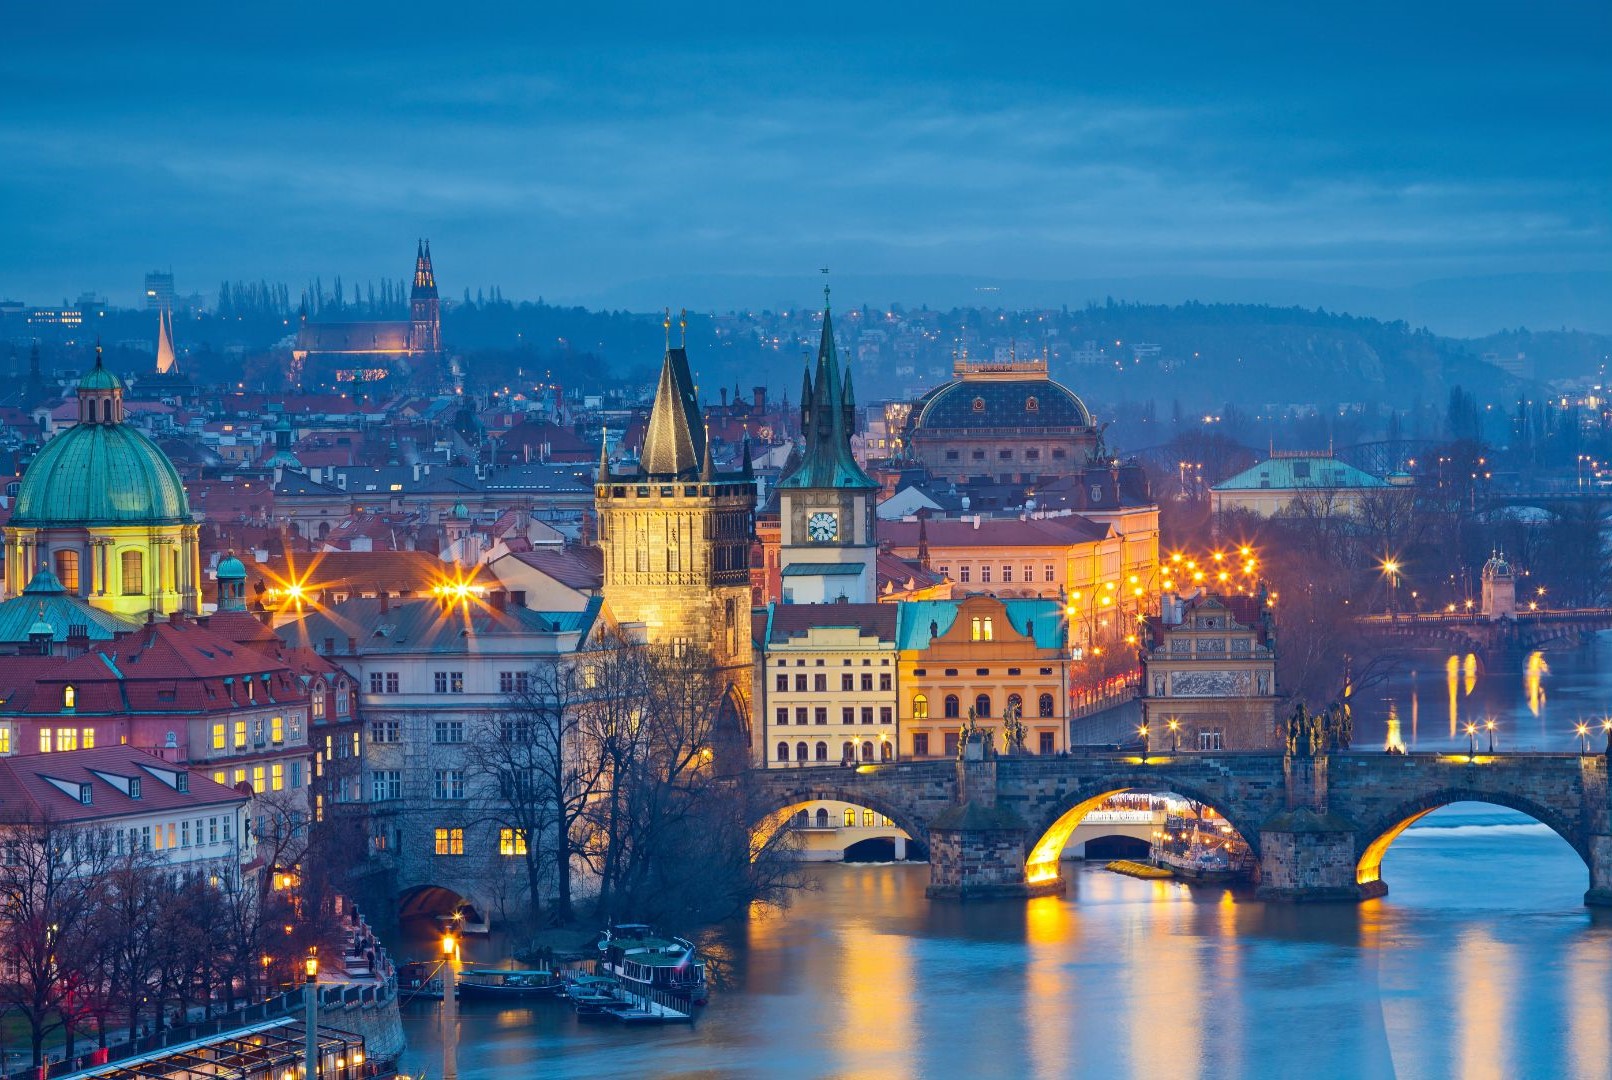 Prague is a fairytale city.